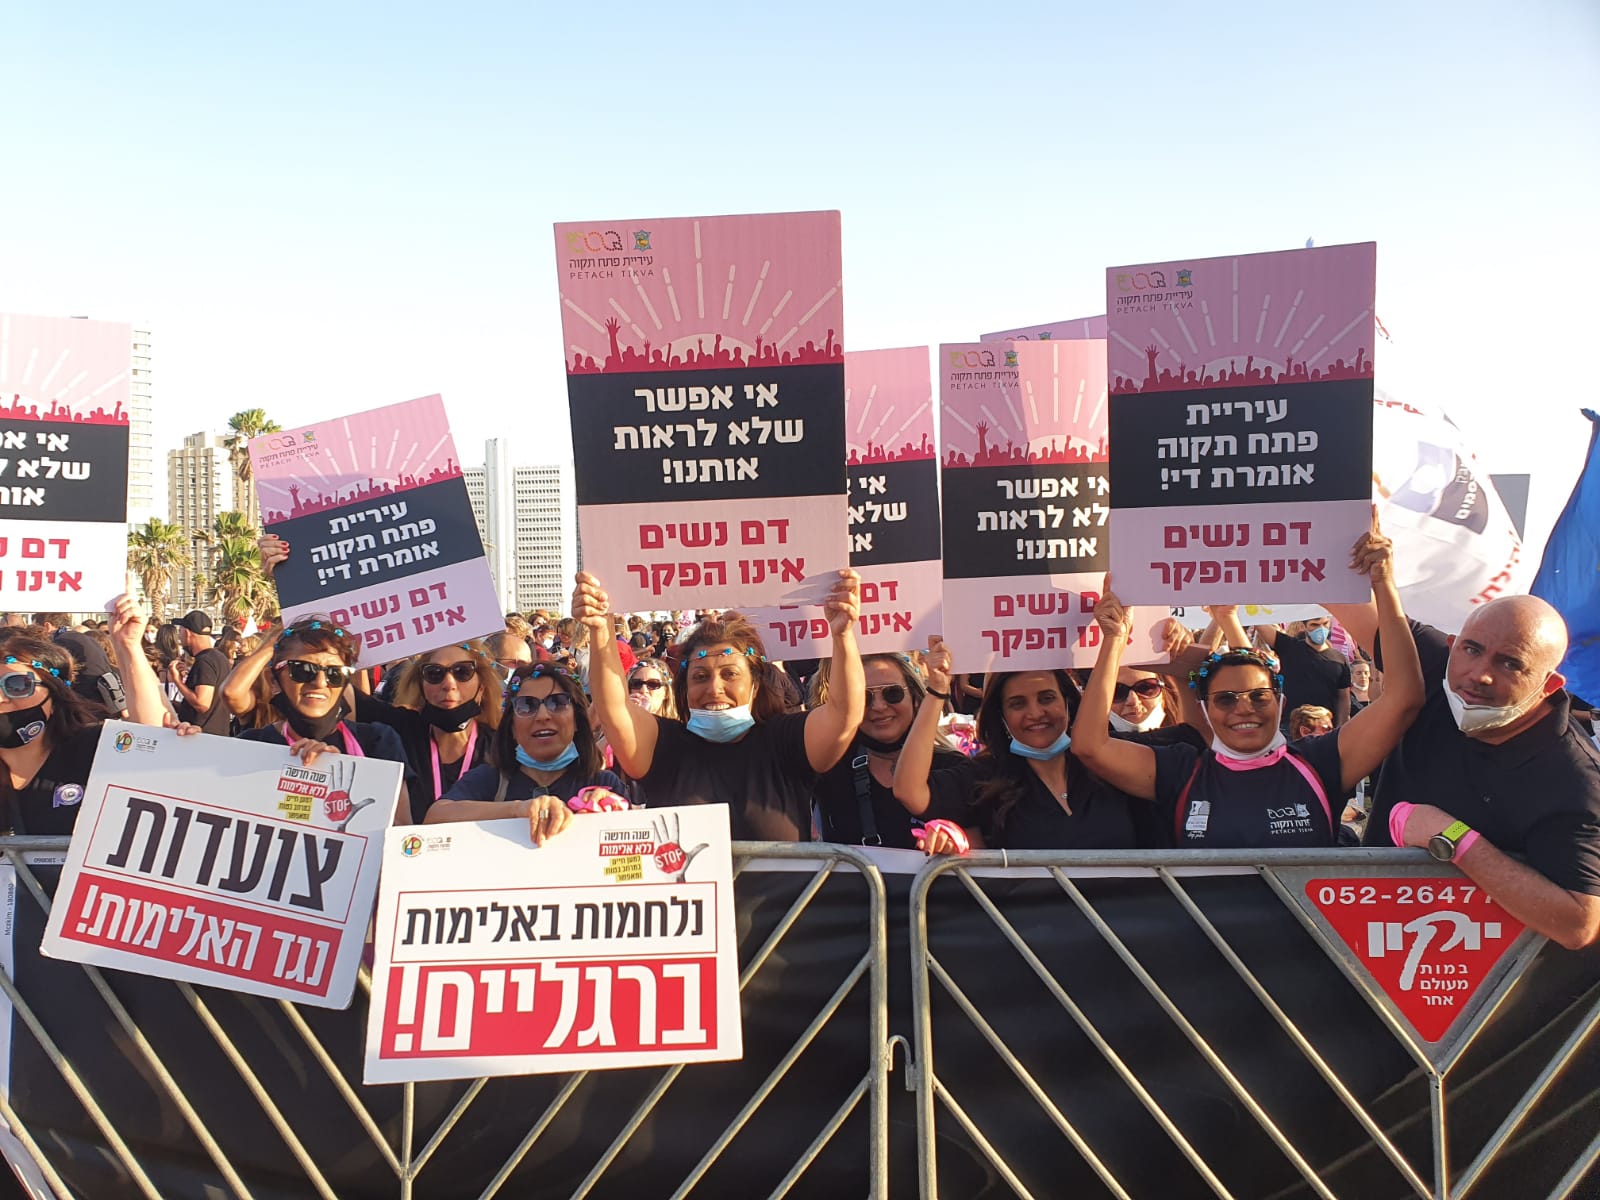 עיריית פתח תקוה השתתפה גם היא במצעד הנשים הארצי שהתקיים ביום שני ה 1/6 בתל אביב